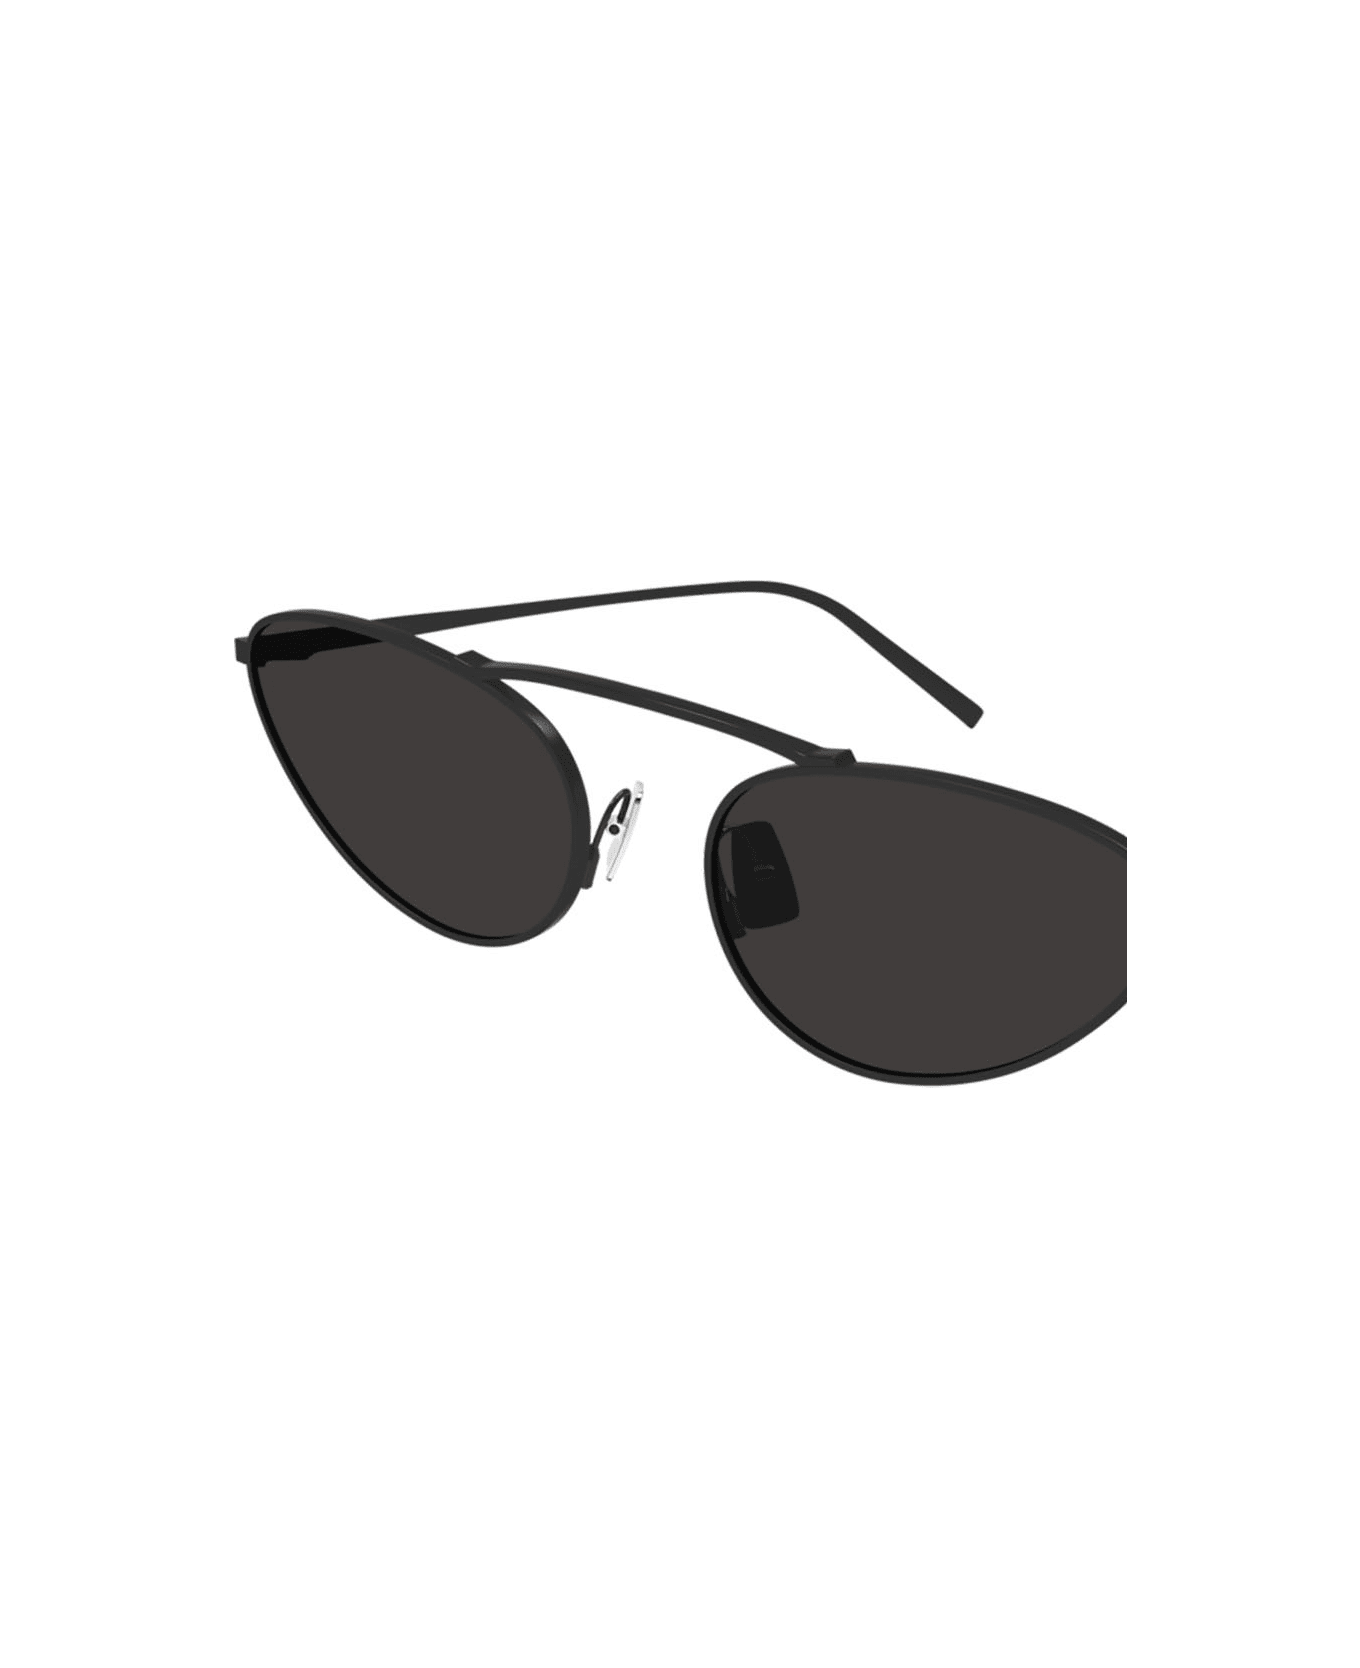 Saint Laurent Eyewear 1cyx4ep0a - 001 black black black